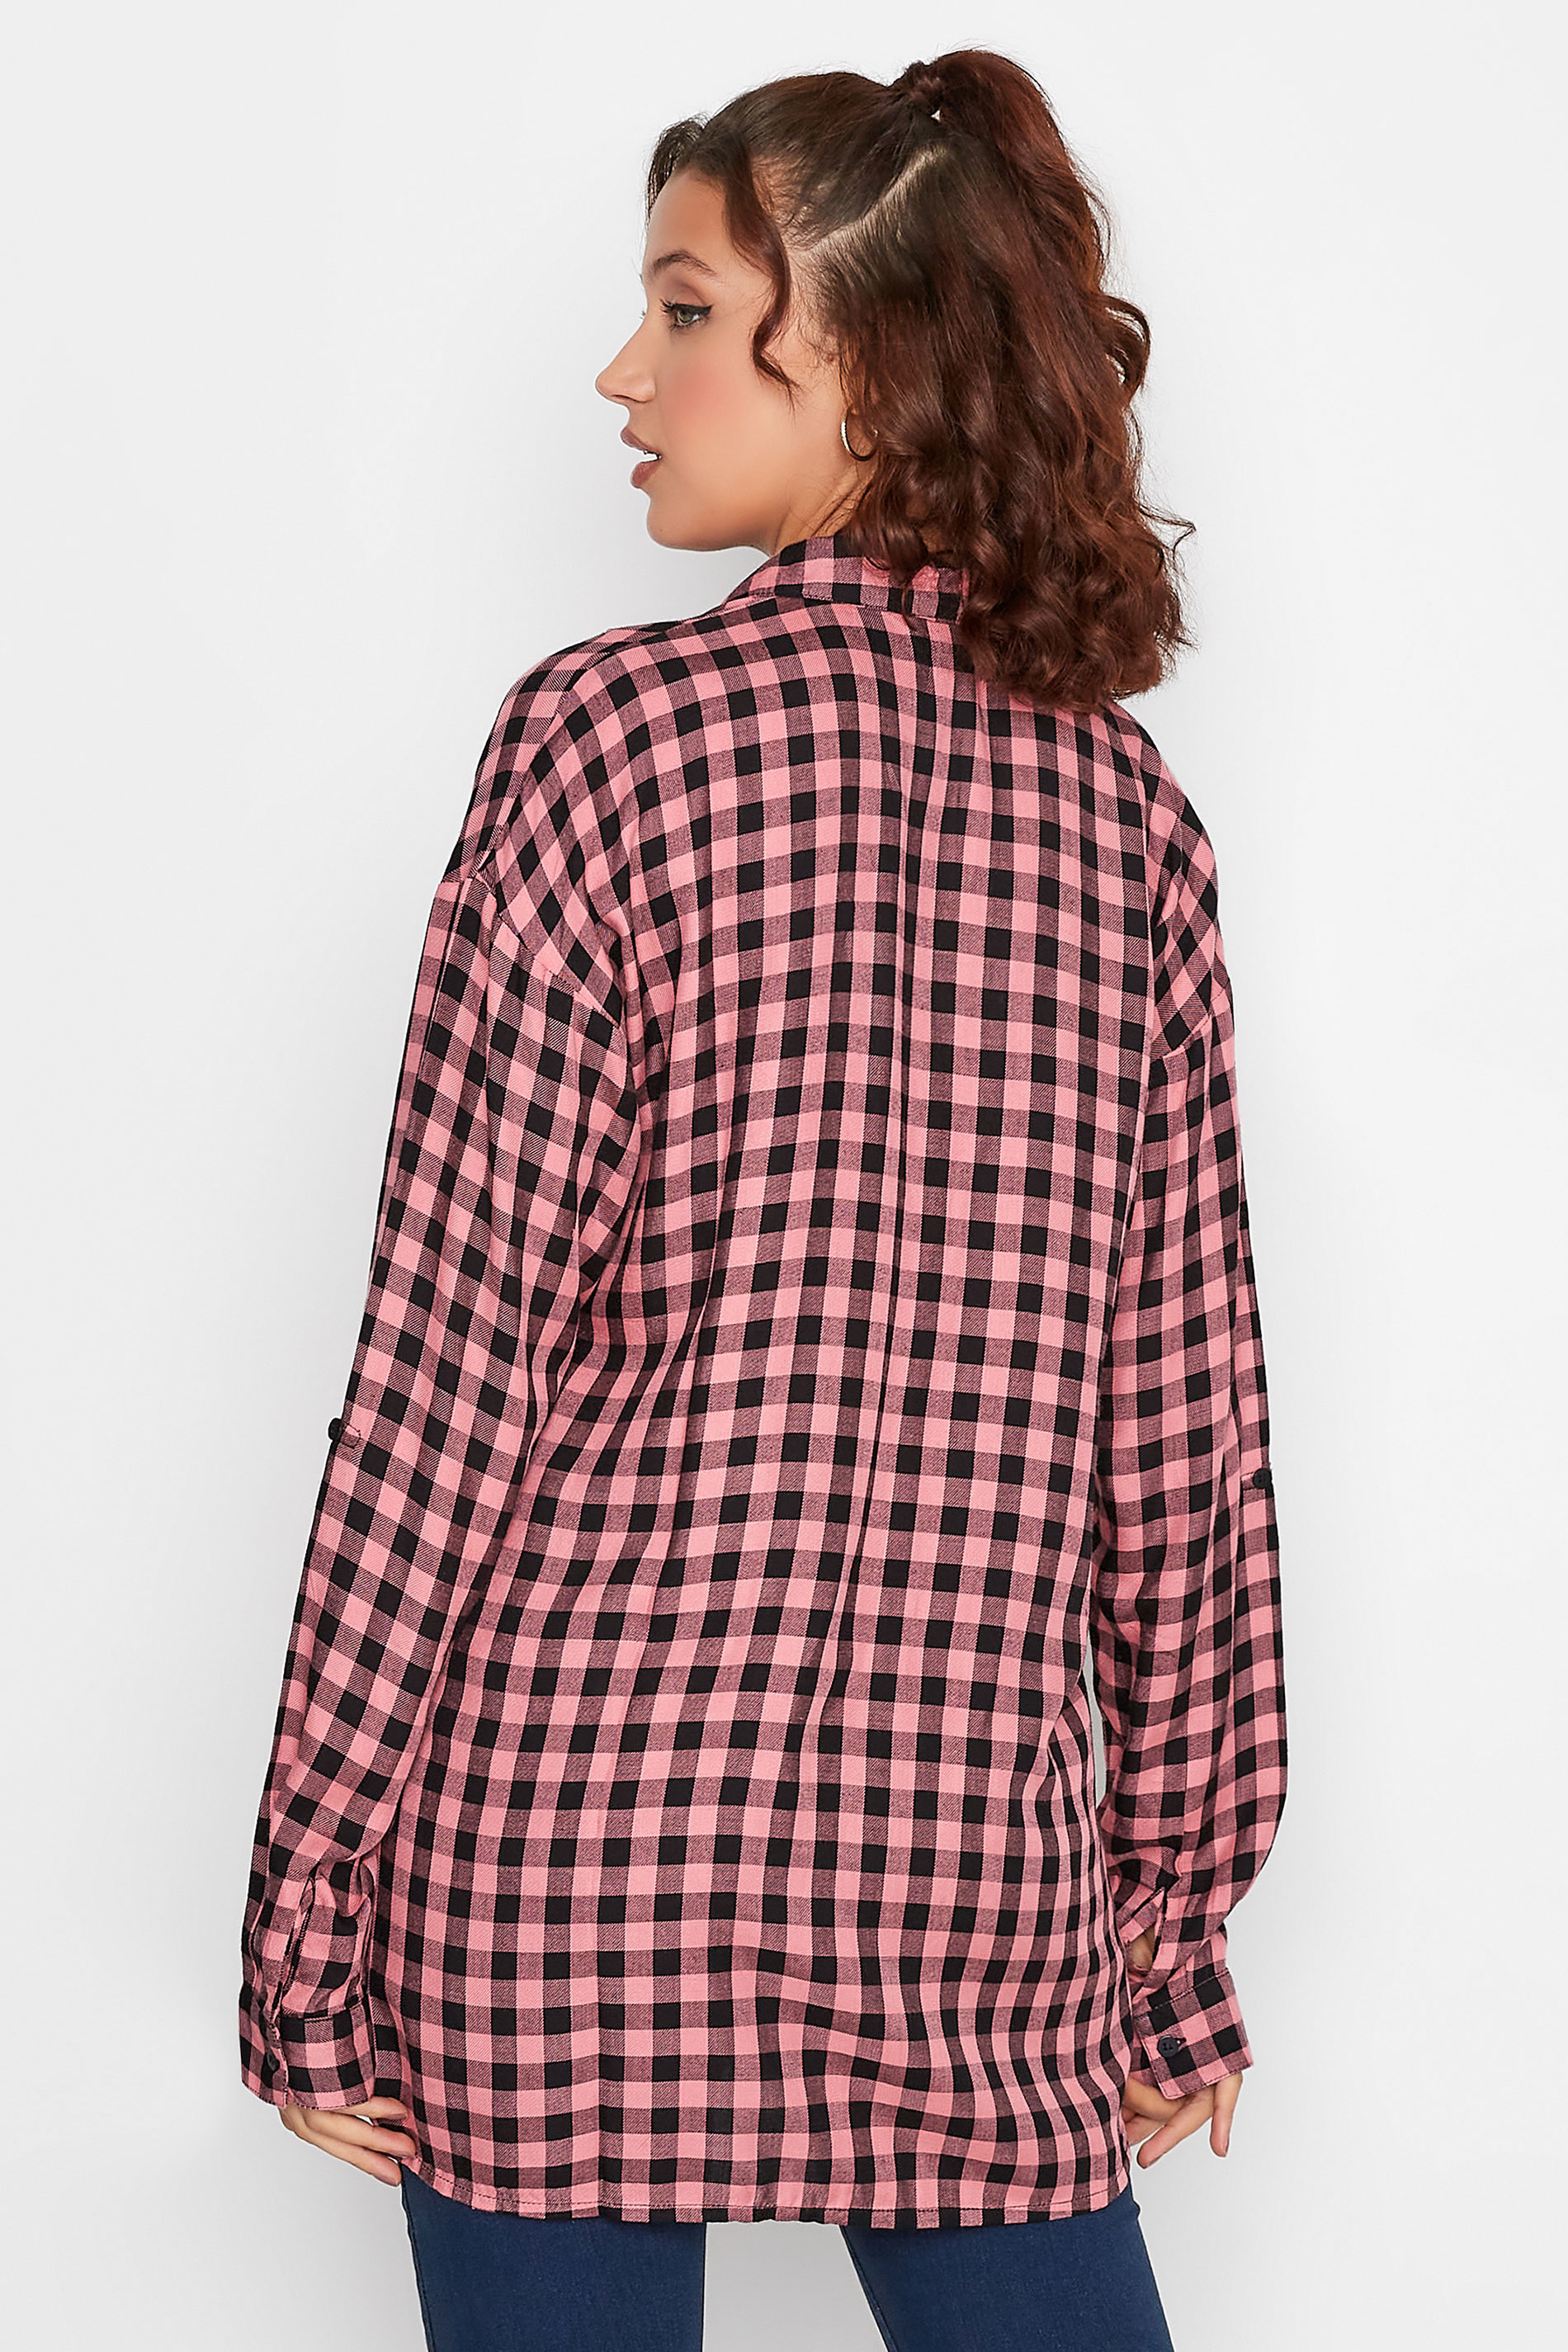 LTS Tall Women's Pink Check Oversized Shirt | Long Tall Sally 3